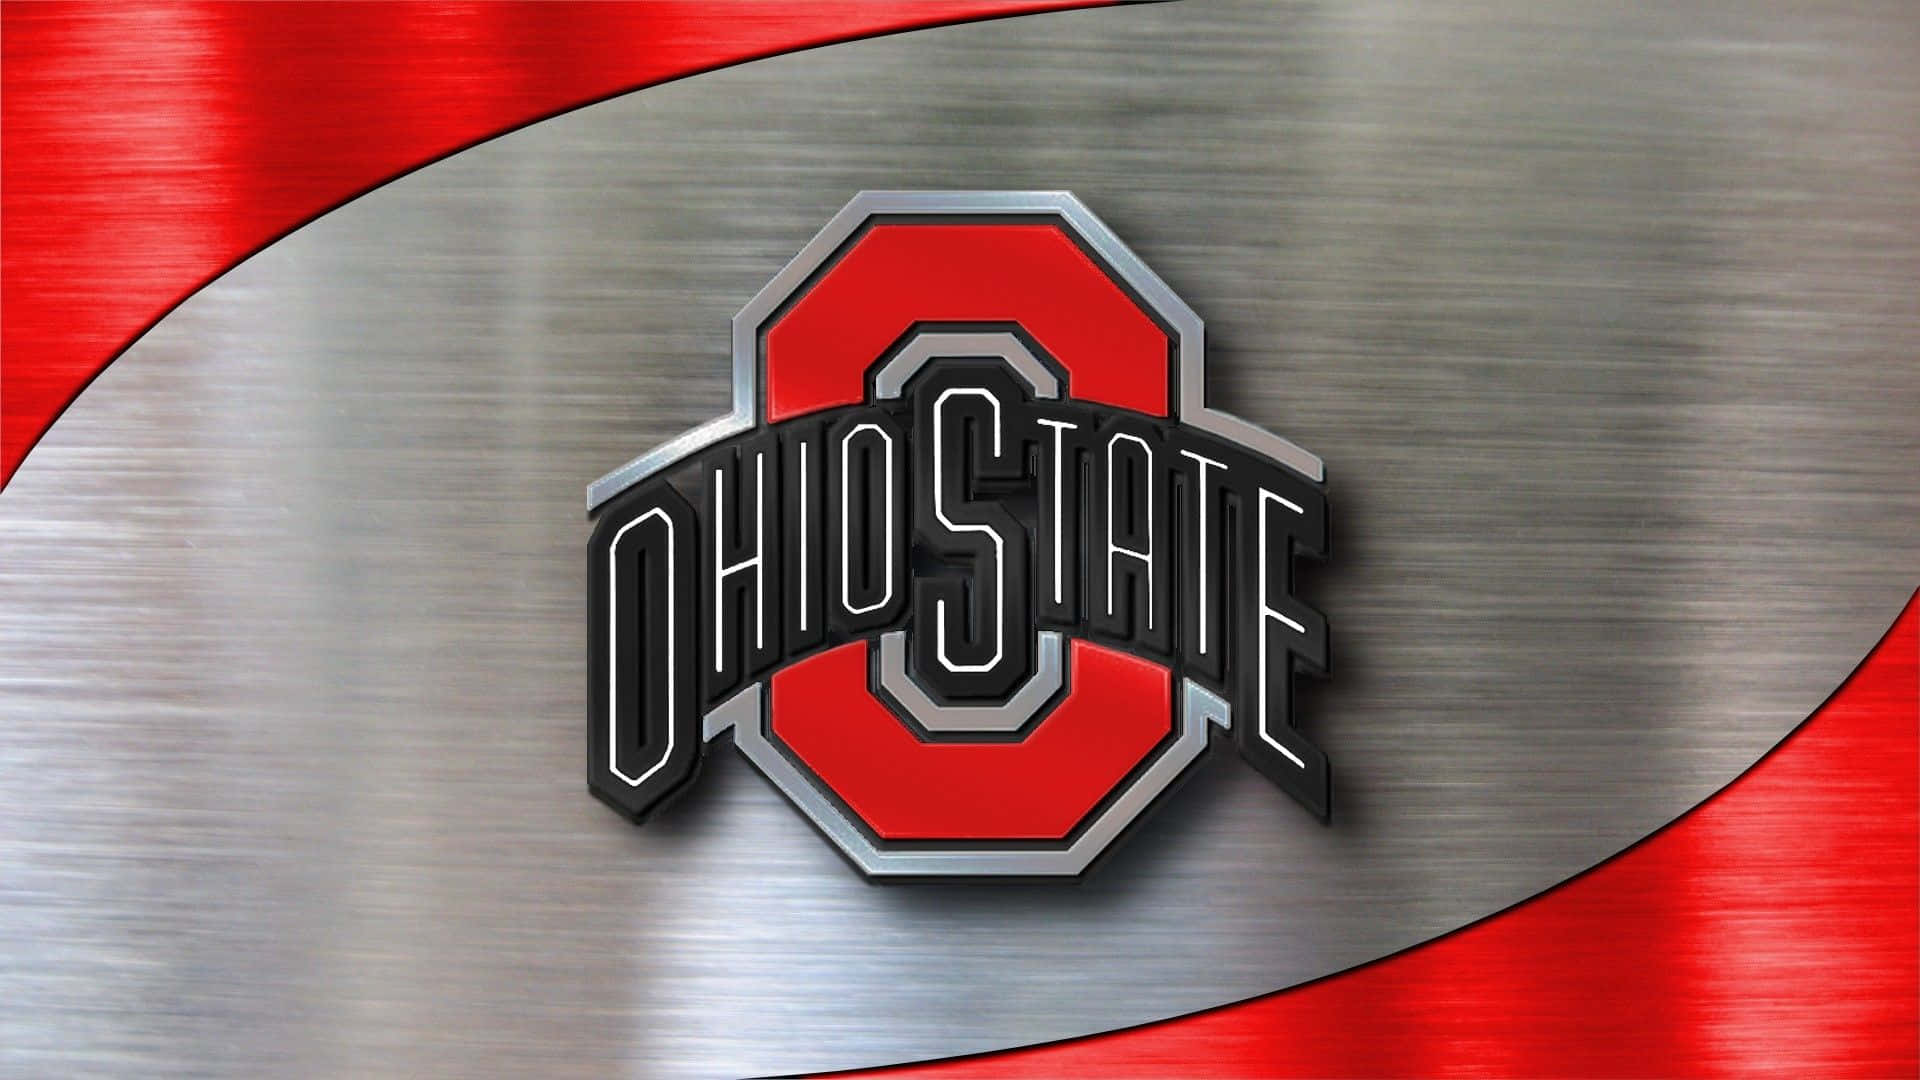 Ohiostate-logo På En Metalbaggrund. Wallpaper